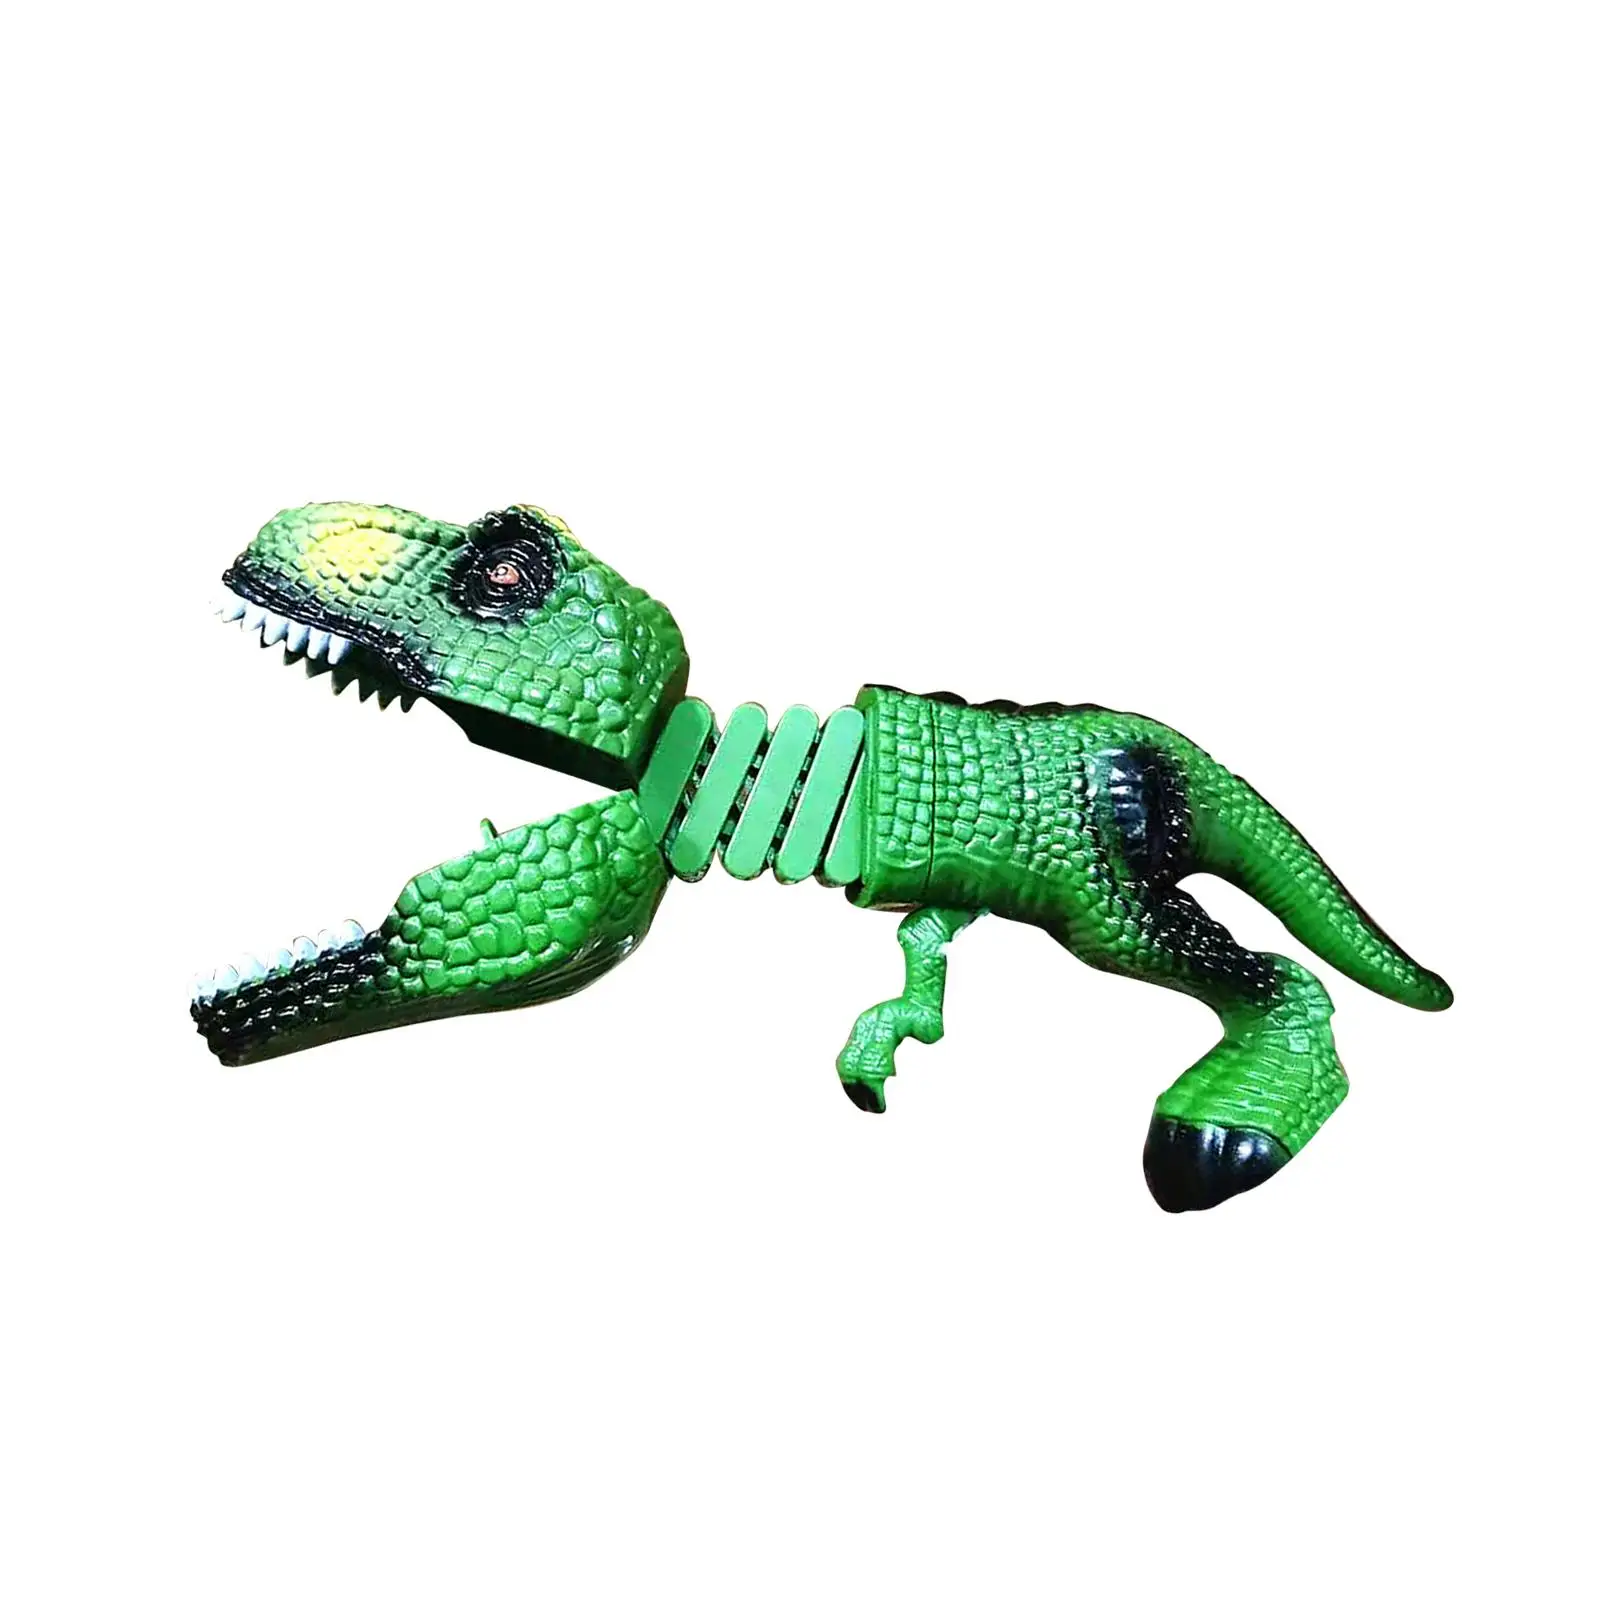 Dinosaur Animal Figures Novelty Pick Up for Kids Boys Girls Gift